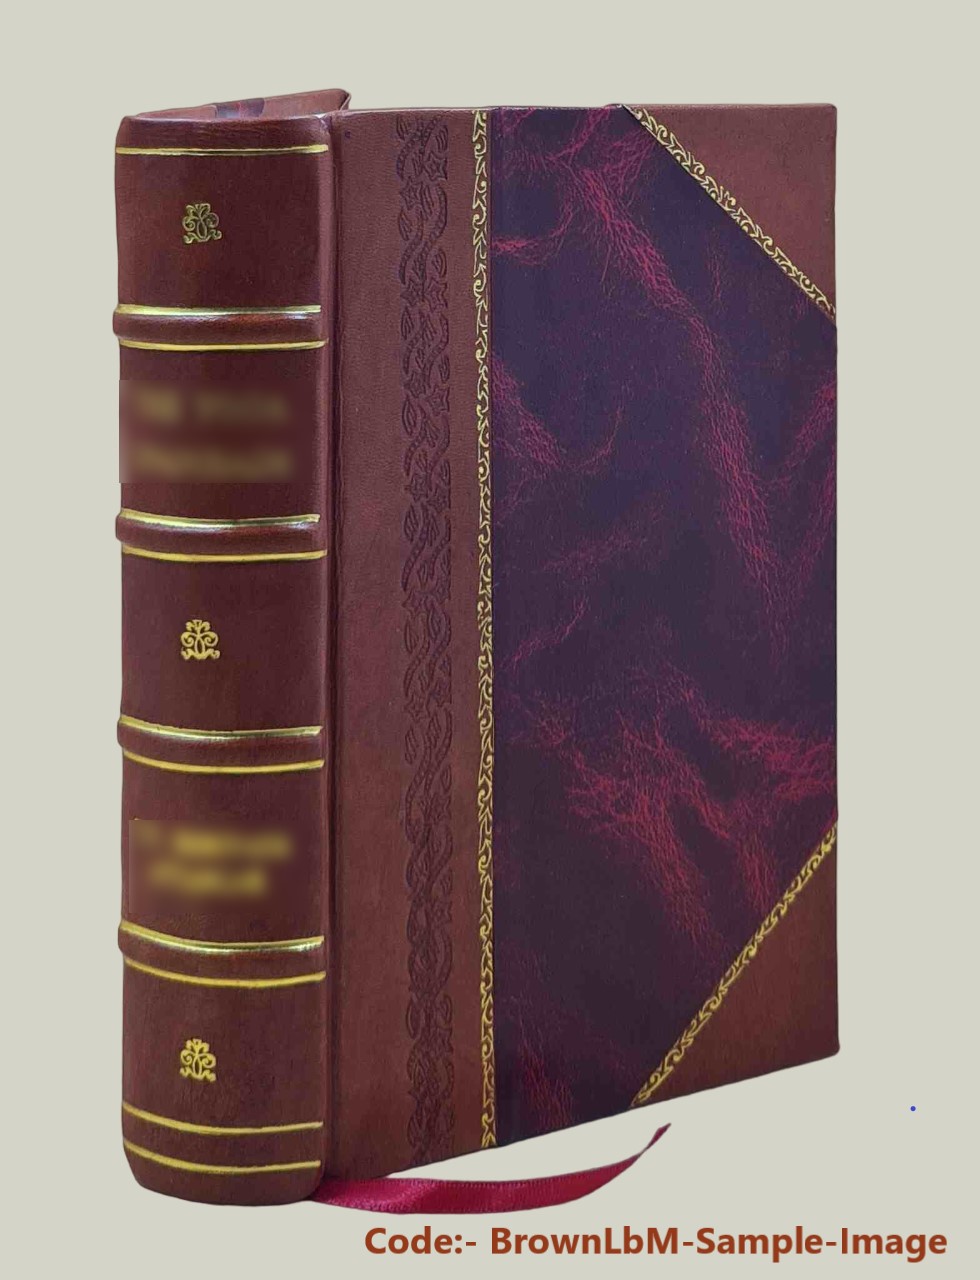 Handbuch der Verfassung und Verwaltung in Preussen und dem deutschen Reiche / von Graf Hue de Grais 1901 [Leather Bound] - Hue de Grais, Robert, Graf, -.